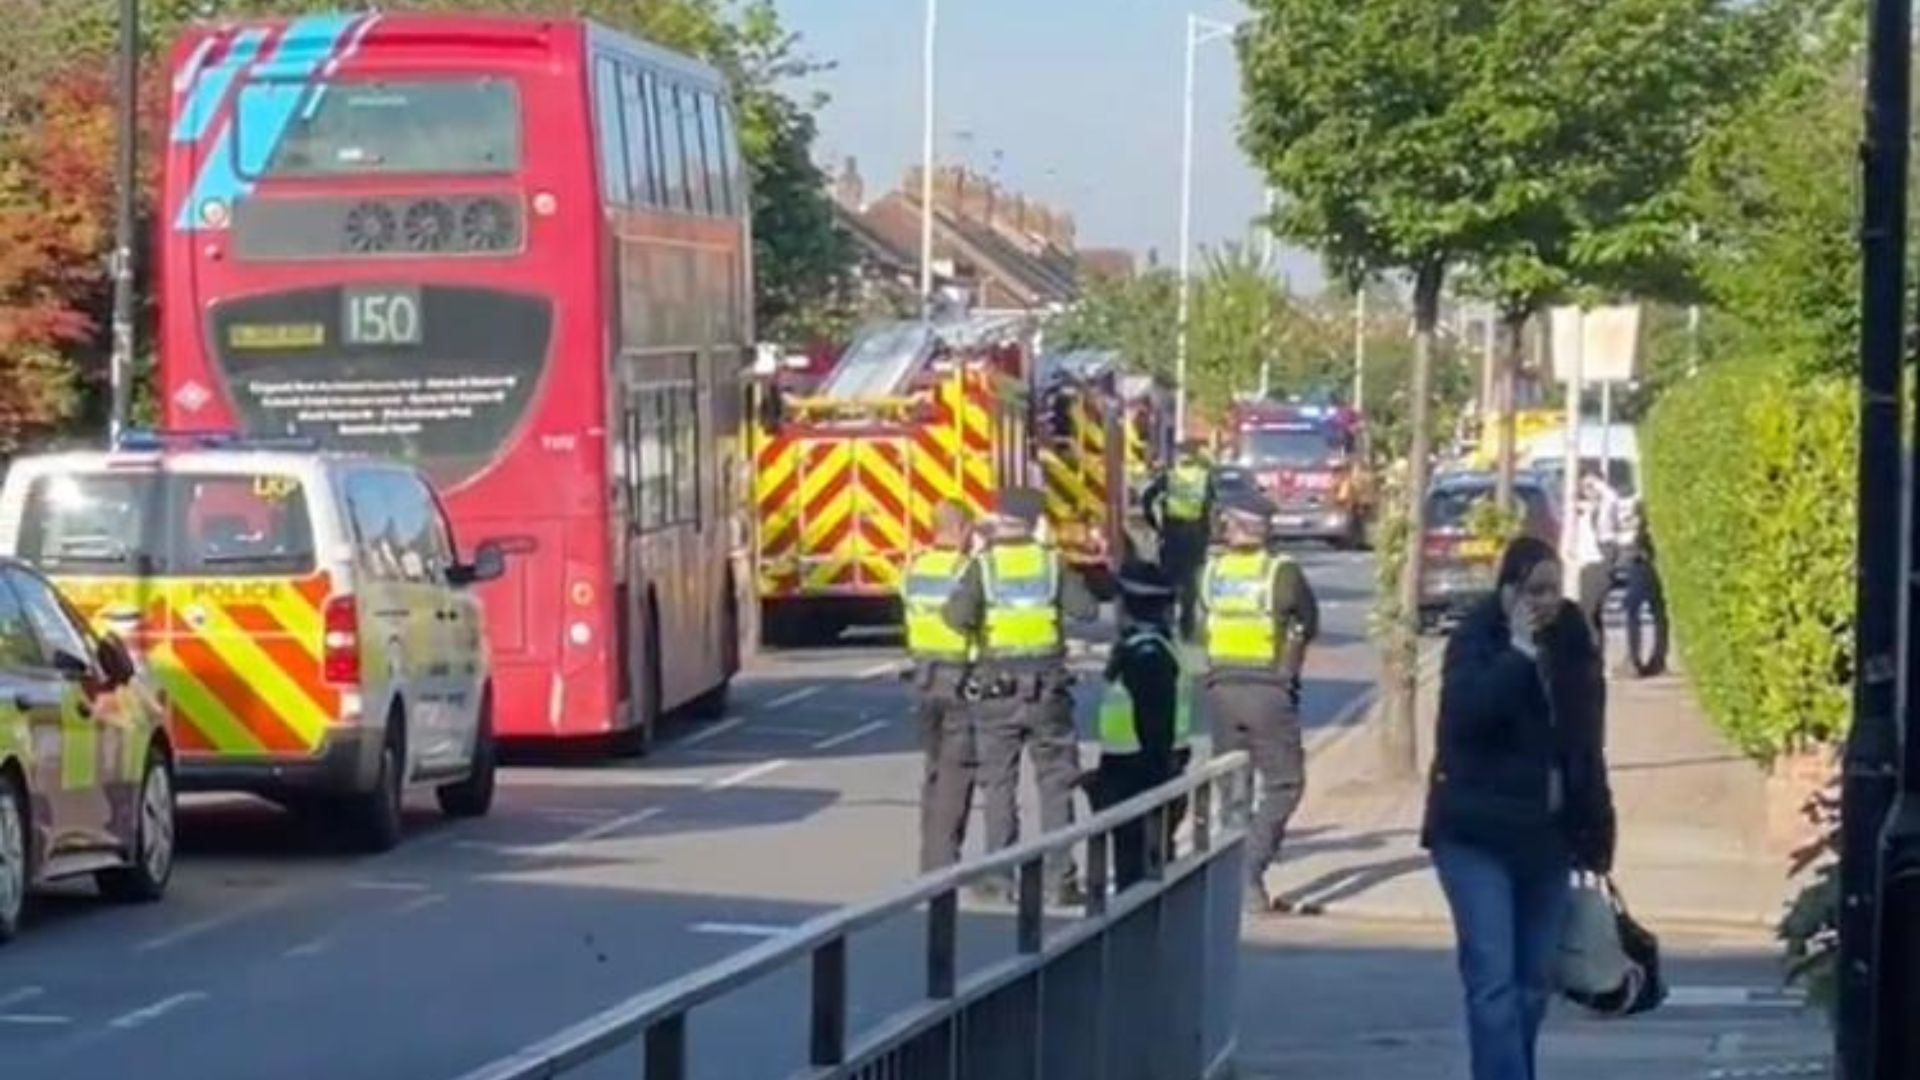 Londra, 36enne armato di katana aggredisce passanti: non è terrorismo